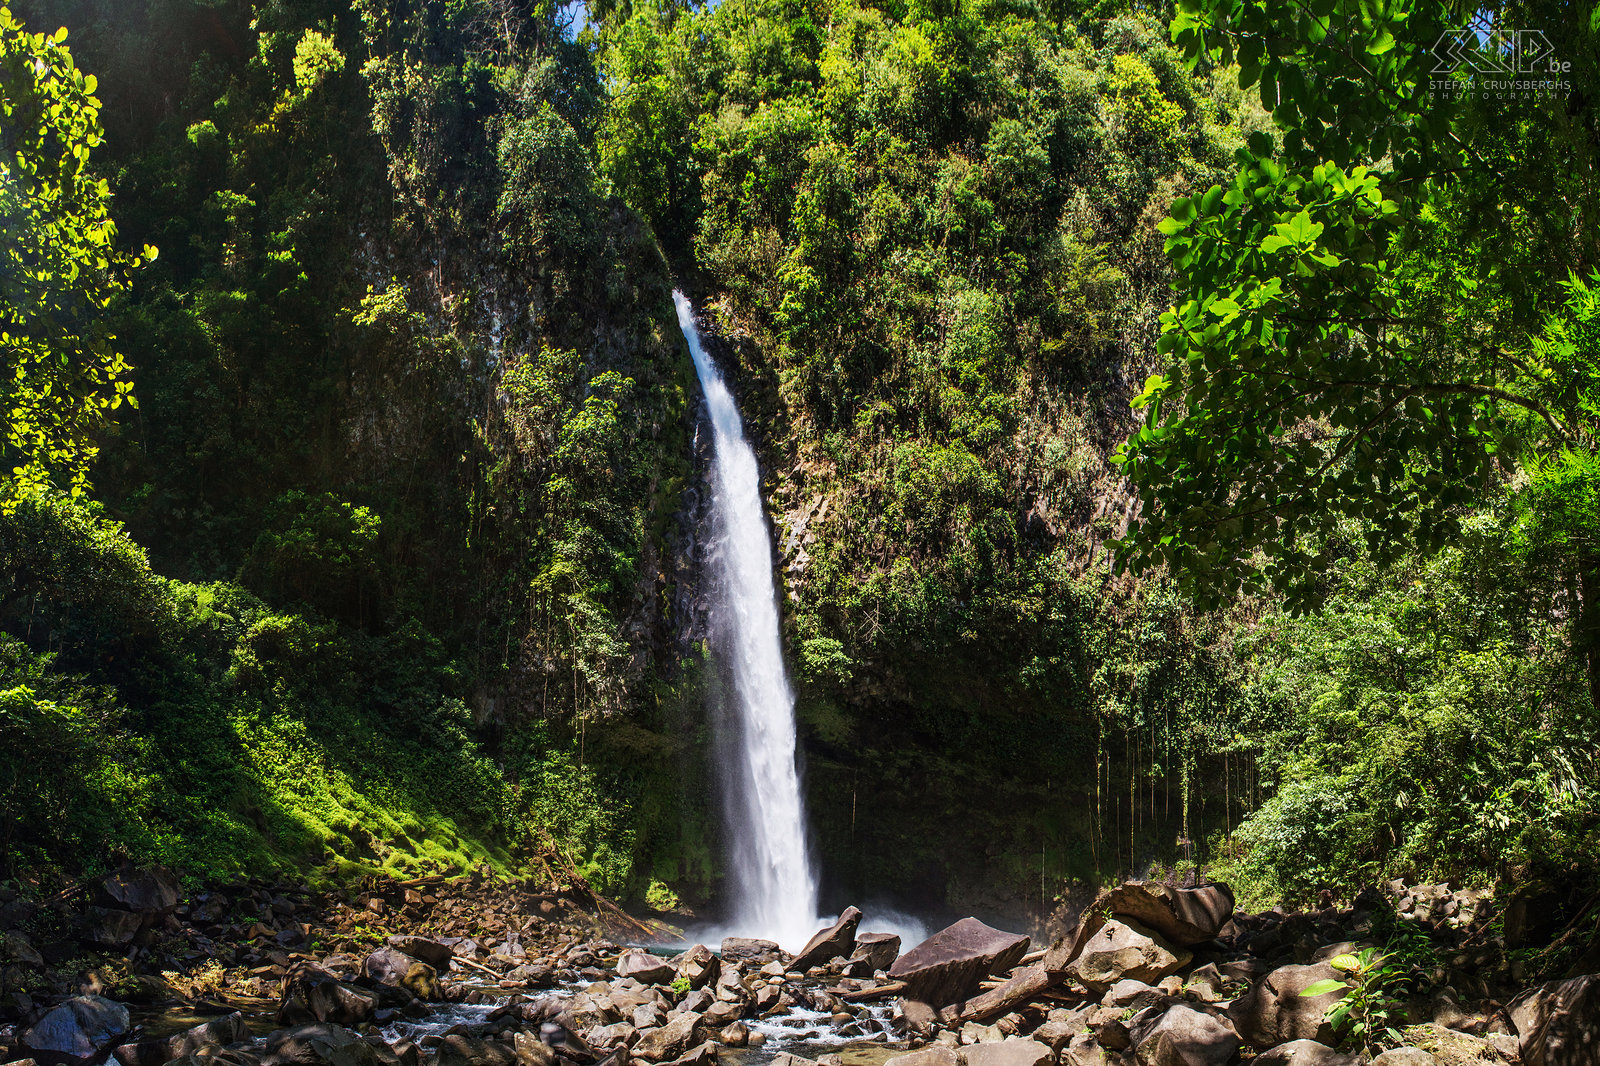 La Fortuna waterval La Fortuna Waterval is gelegen in de buurt van de stad La Fortuna en in de buurt van de Arenal vulkaan. De waterval is 65m hoog en valt vanuit de groene jungle in een smaragdgroene poel. Stefan Cruysberghs